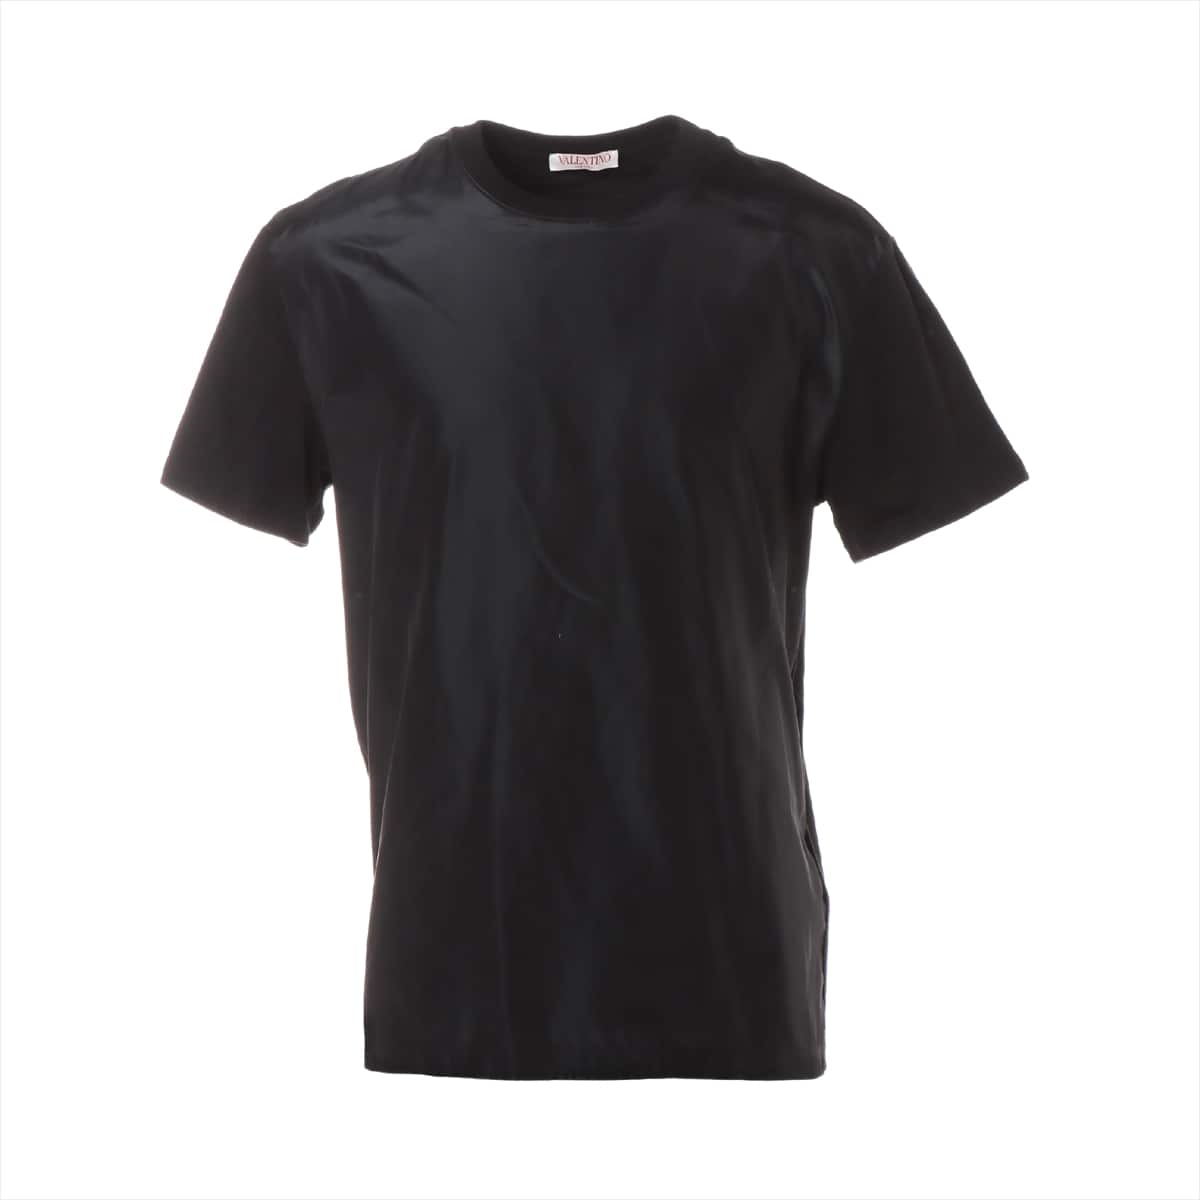 ヴァレンティノ コットン Tシャツ M メンズ ブラック  バックロゴ